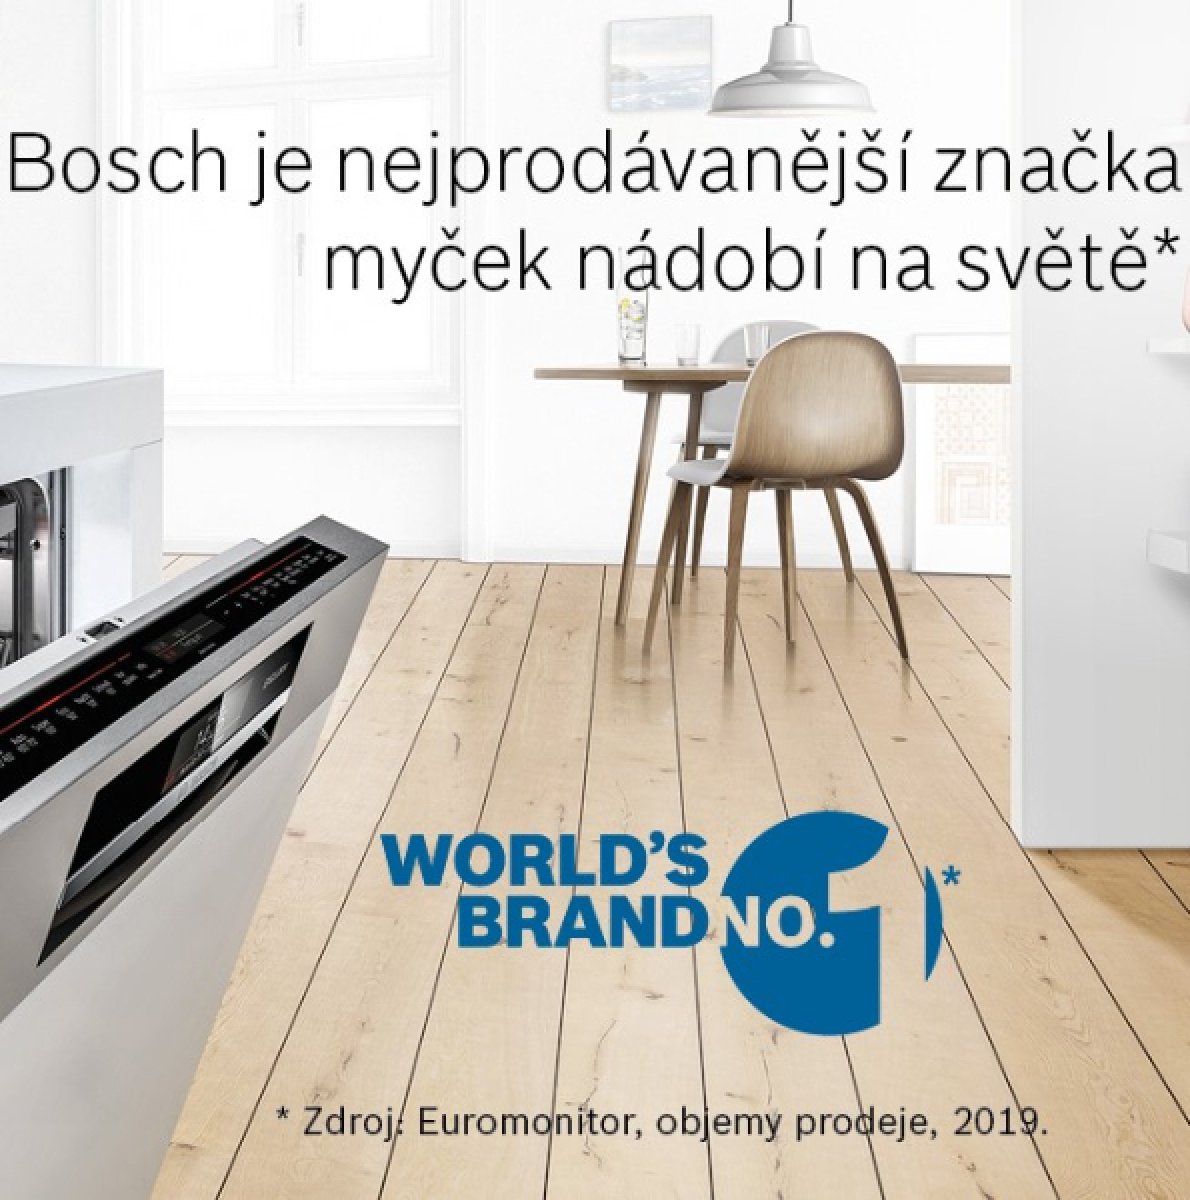 Bosch patří mezi nejprodávanější značky myček nádobí na světě